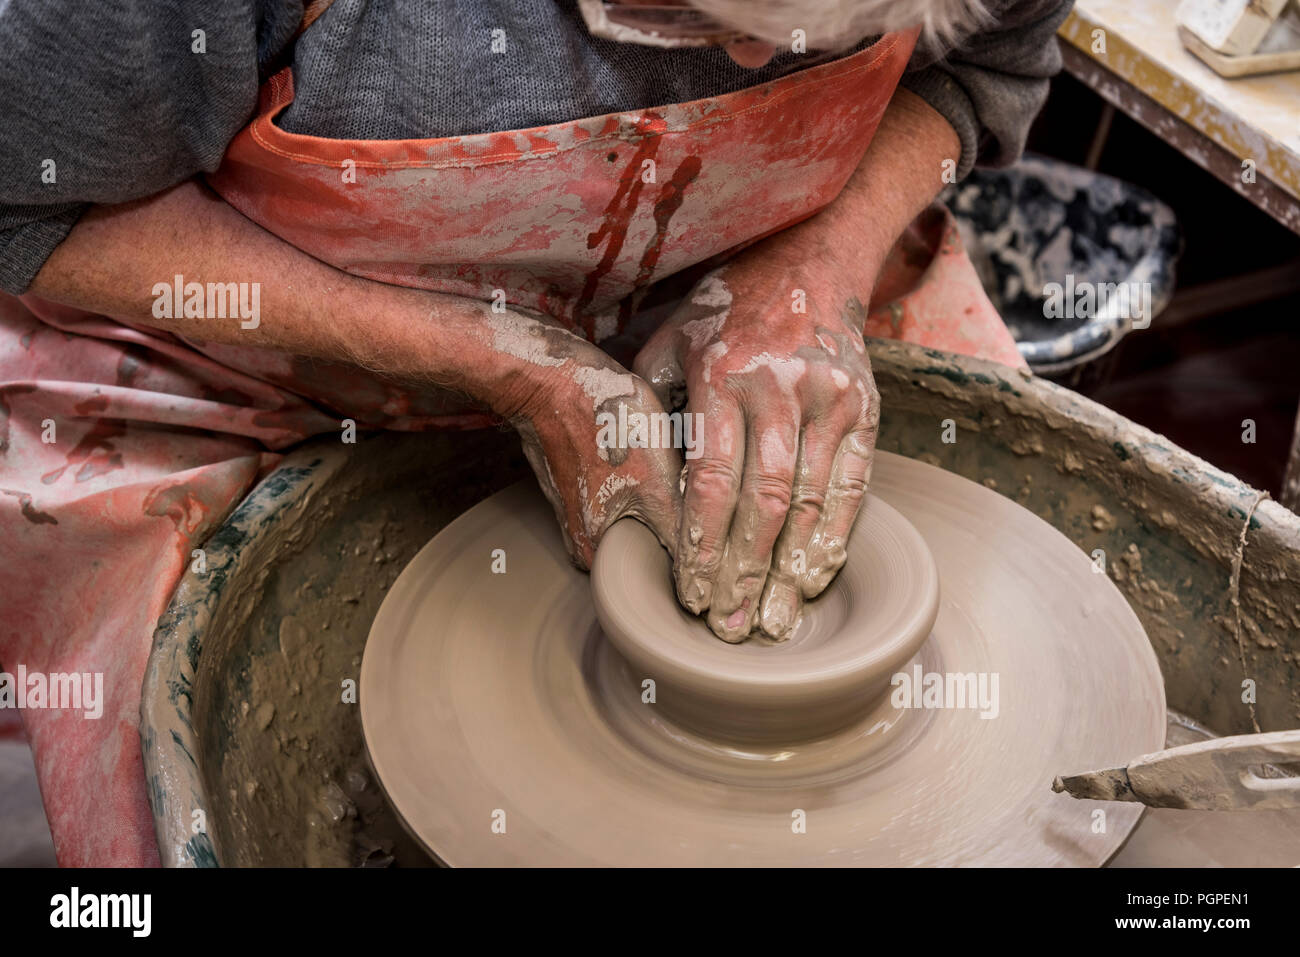 Vieil homme spinning potters wheel rendant la plaque d'argile,pilling, Lancashire, Angleterre, Royaume-Uni Banque D'Images